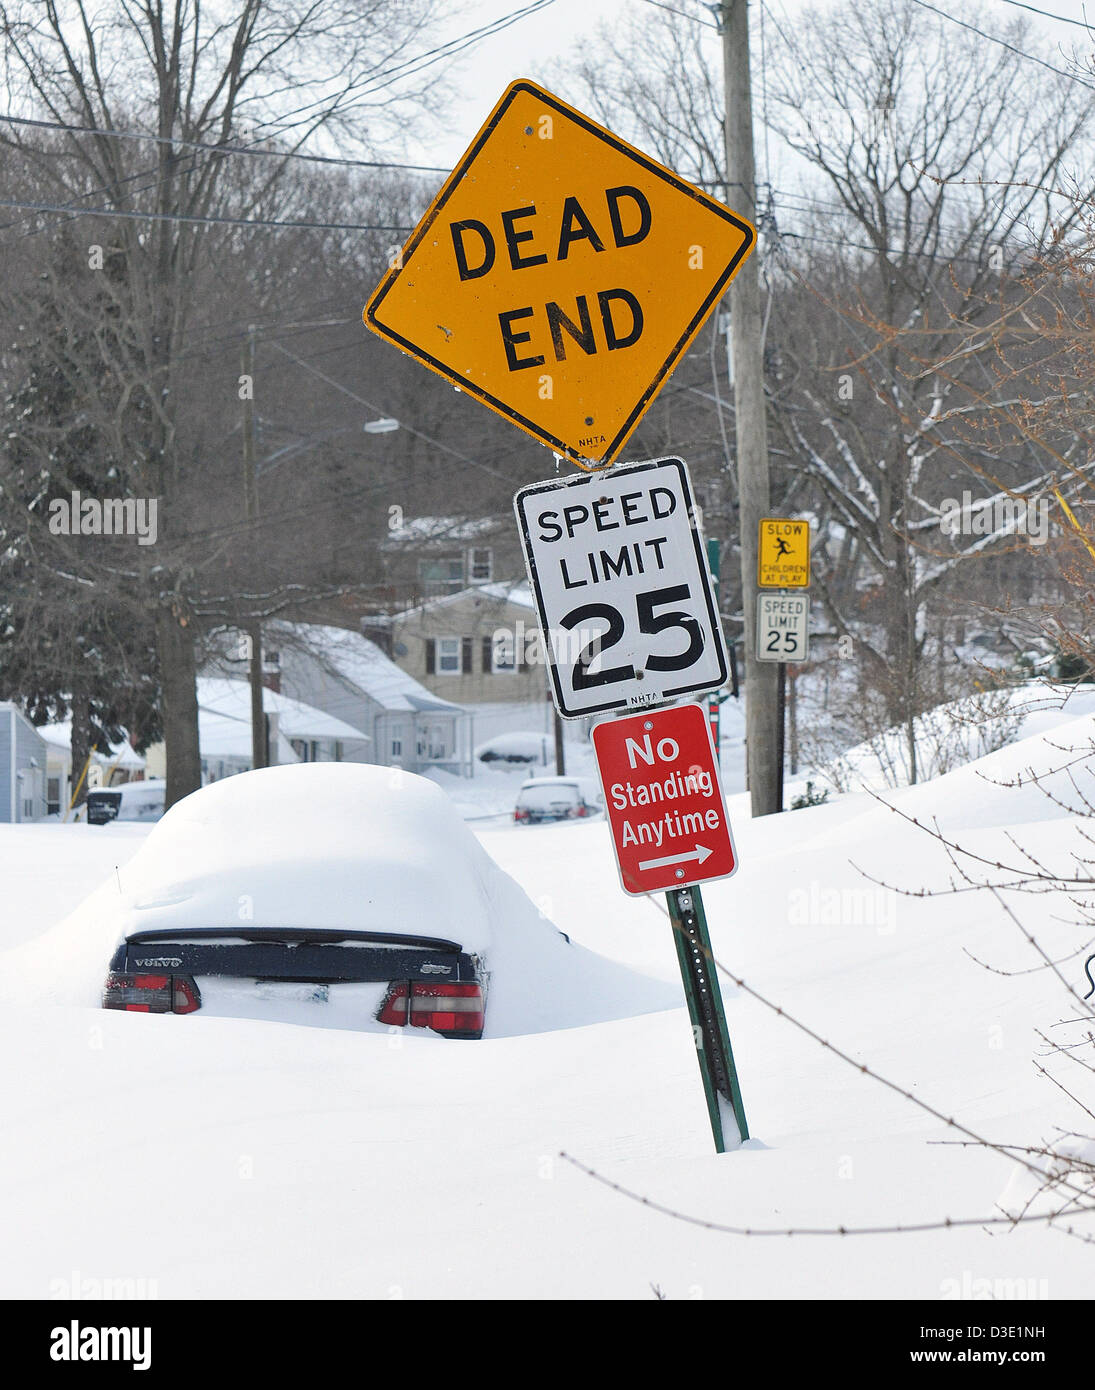 Autos im Schnee aufgetürmt, nachdem Blizzard Nemo Connecticut, dumping Rekord Schneefälle getroffen. Der Ausnahmezustand wurde nach Sturm erklärt. Stockfoto